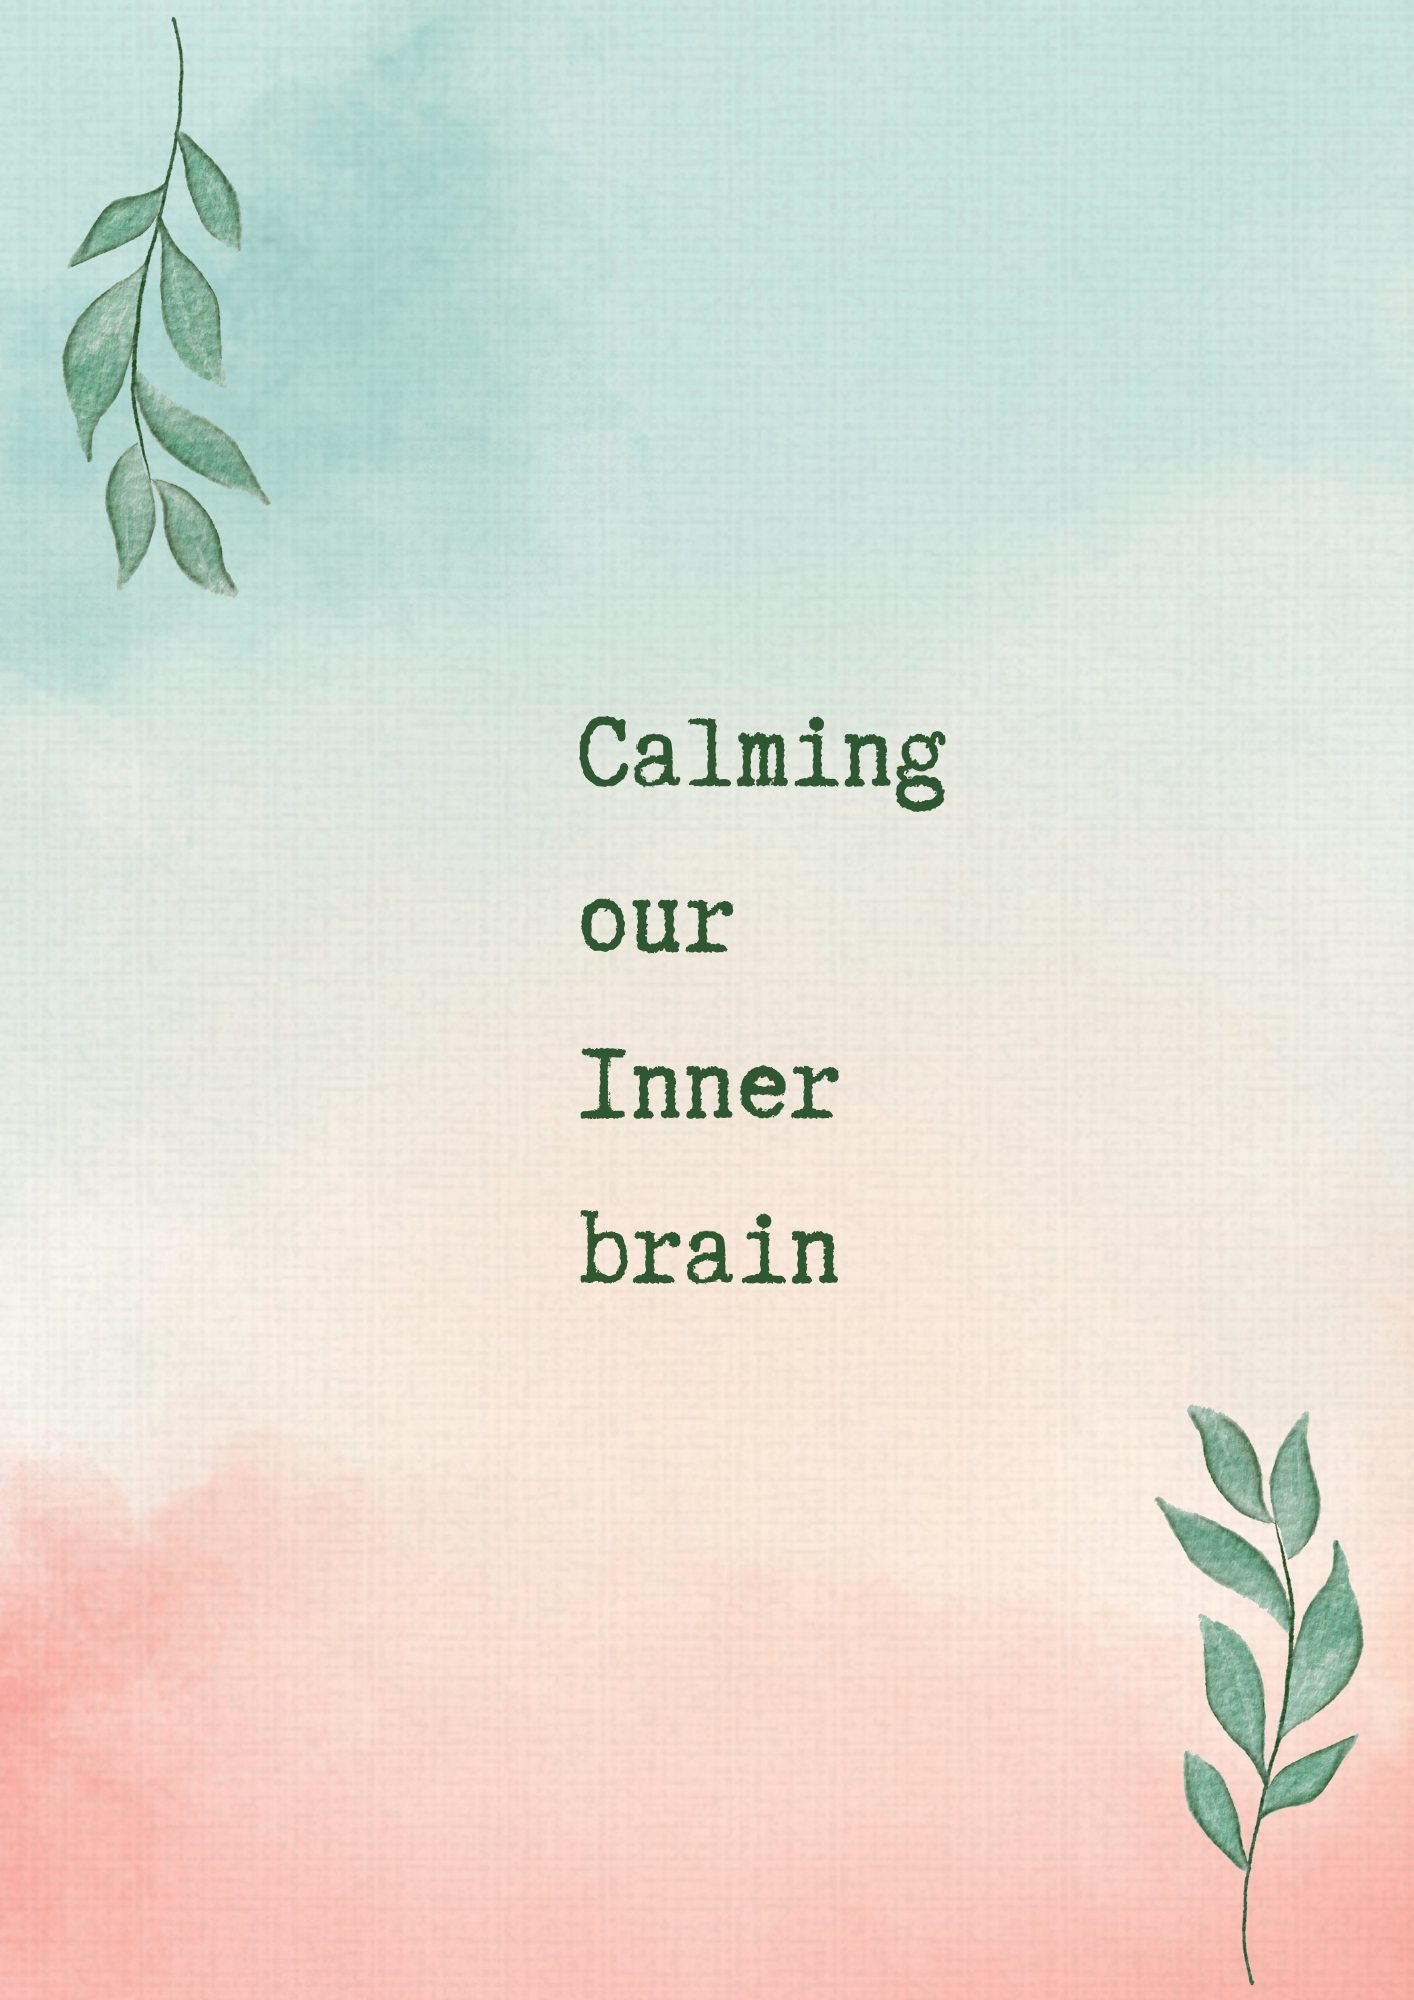 Calming our inner brain